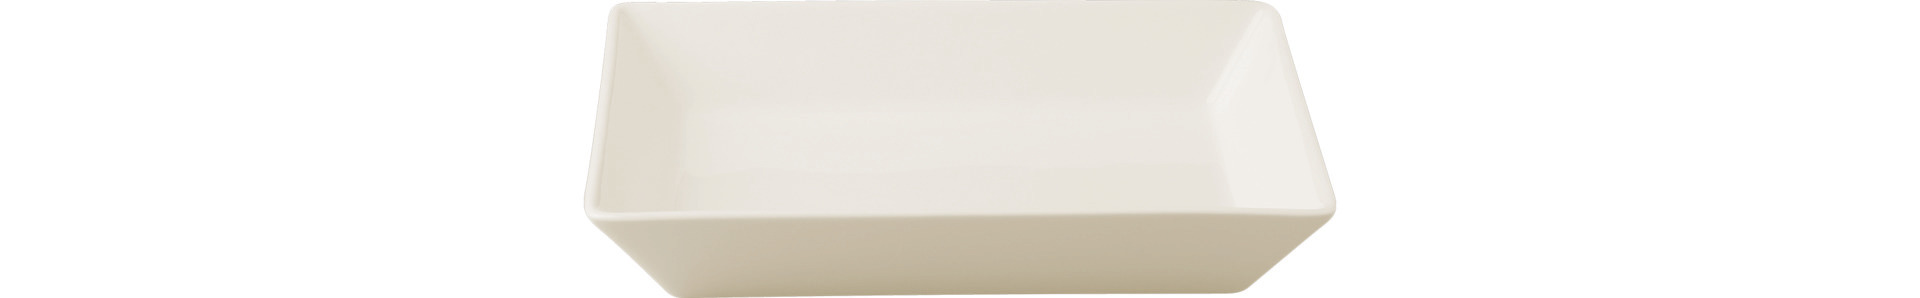 Schale rechteckig 170 x 130 mm / 0,50 l crème